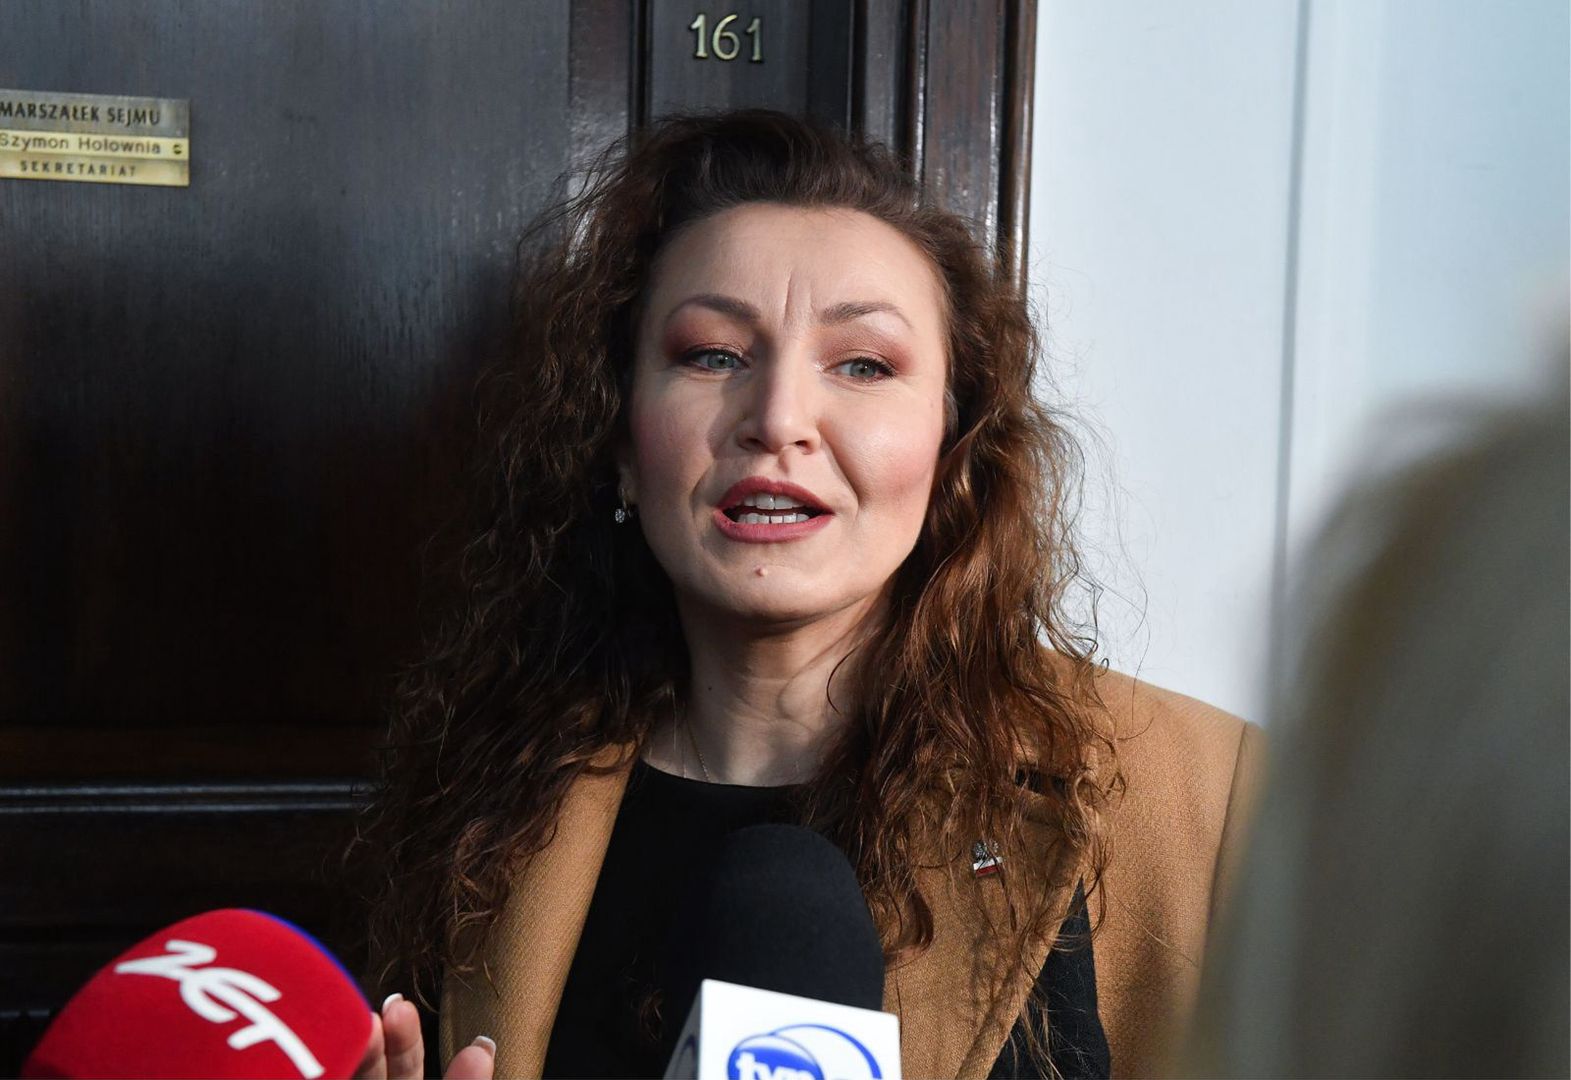 Monika Pawłowska wraca do Sejmu. Przyszła posłanka dementuje spekulacje